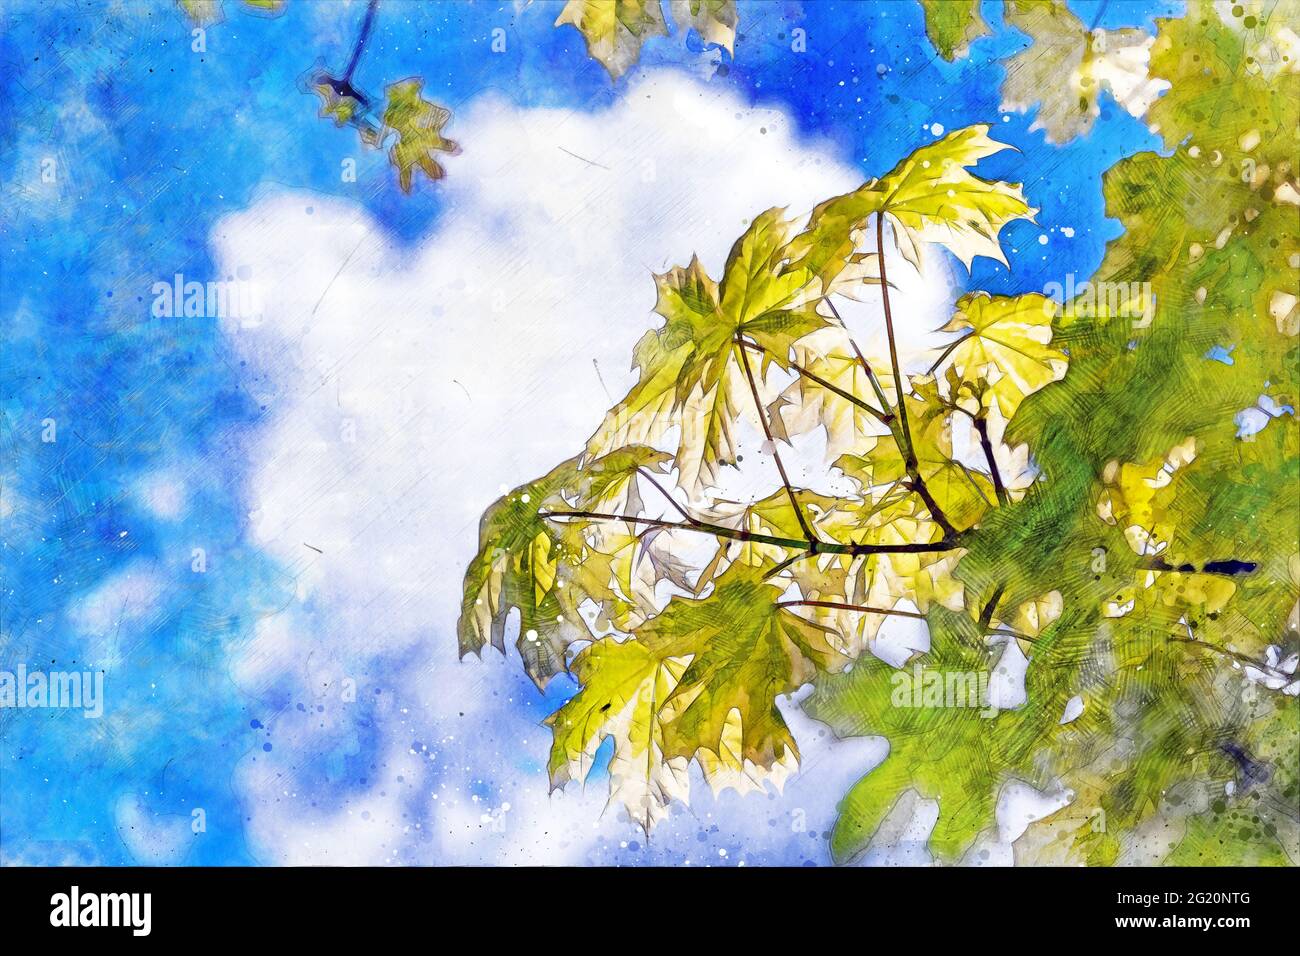 Érable avec branches avec feuilles vertes et jaunes avec ciel en arrière-plan - image générée numériquement. Banque D'Images